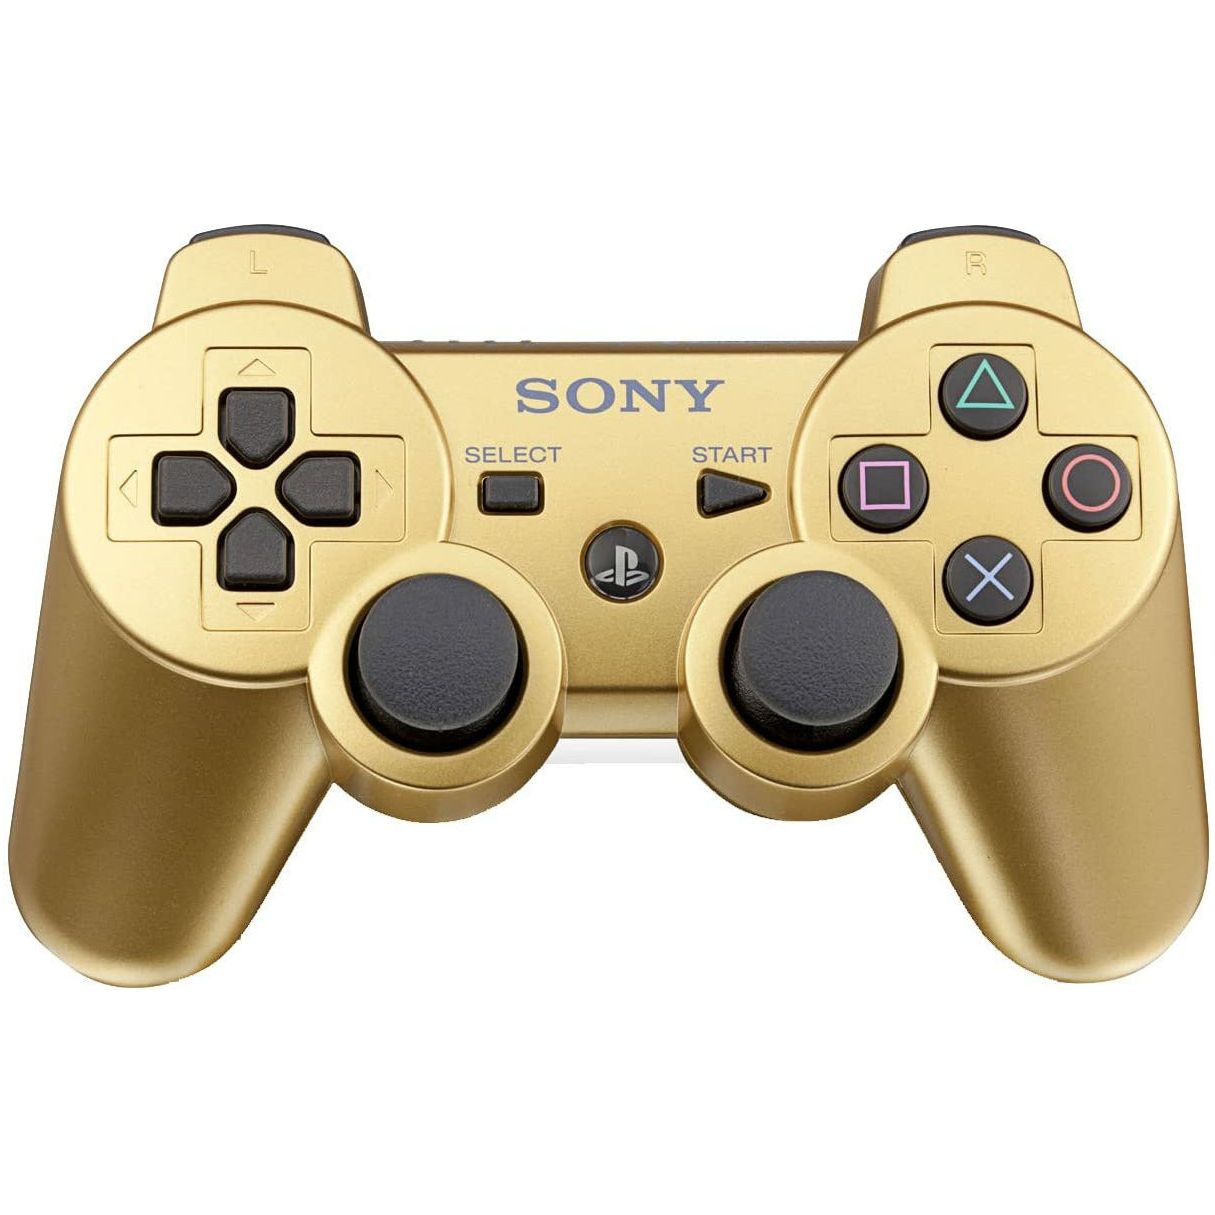 Manette Sony DualShock PS3 (utilisée) (or)